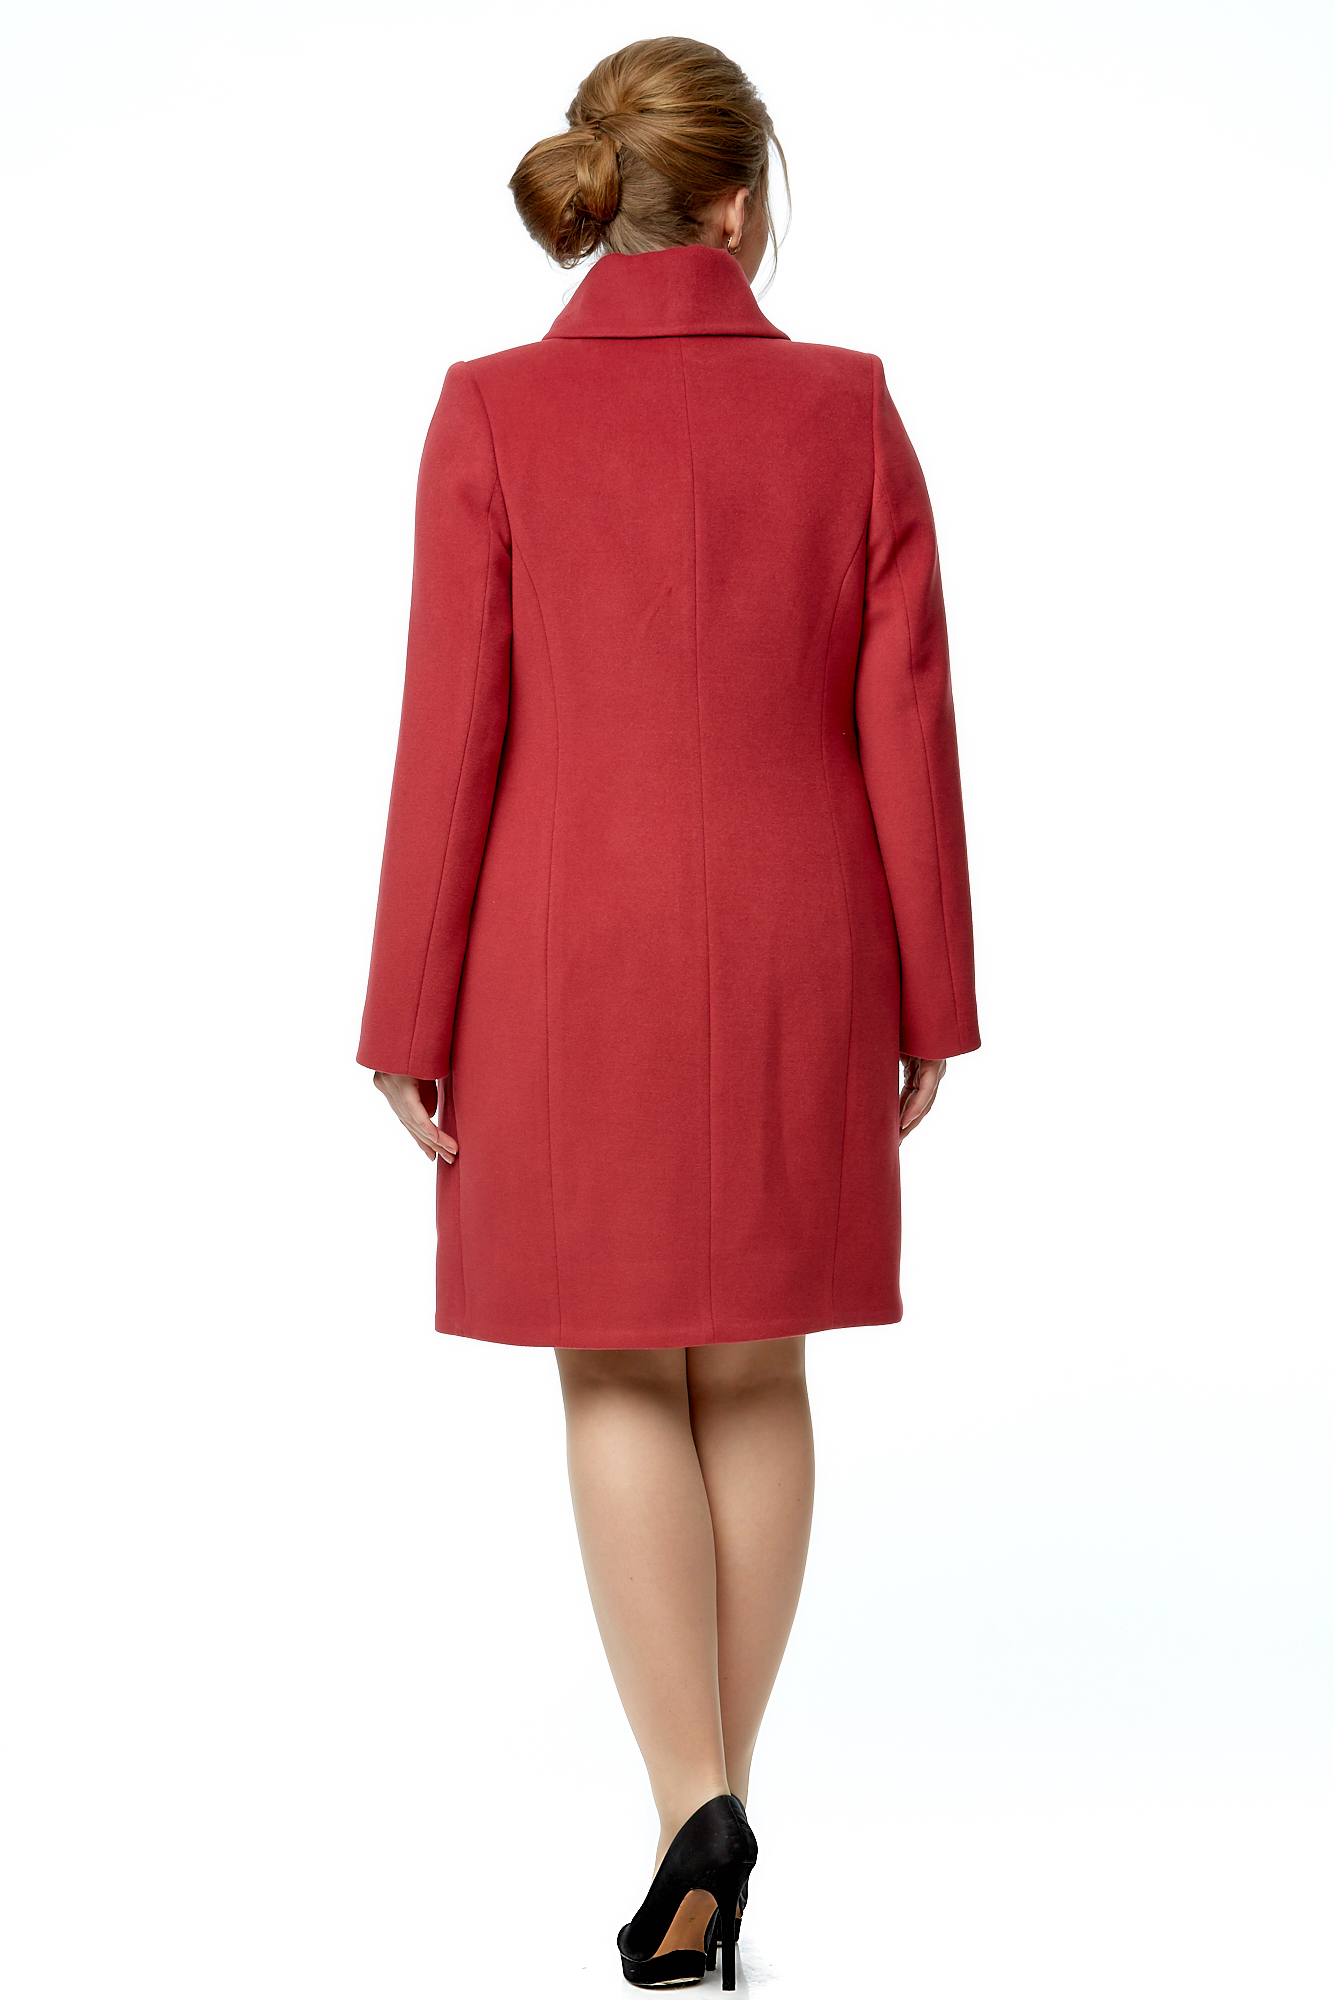 Женское пальто из текстиля с воротником 8000898-3